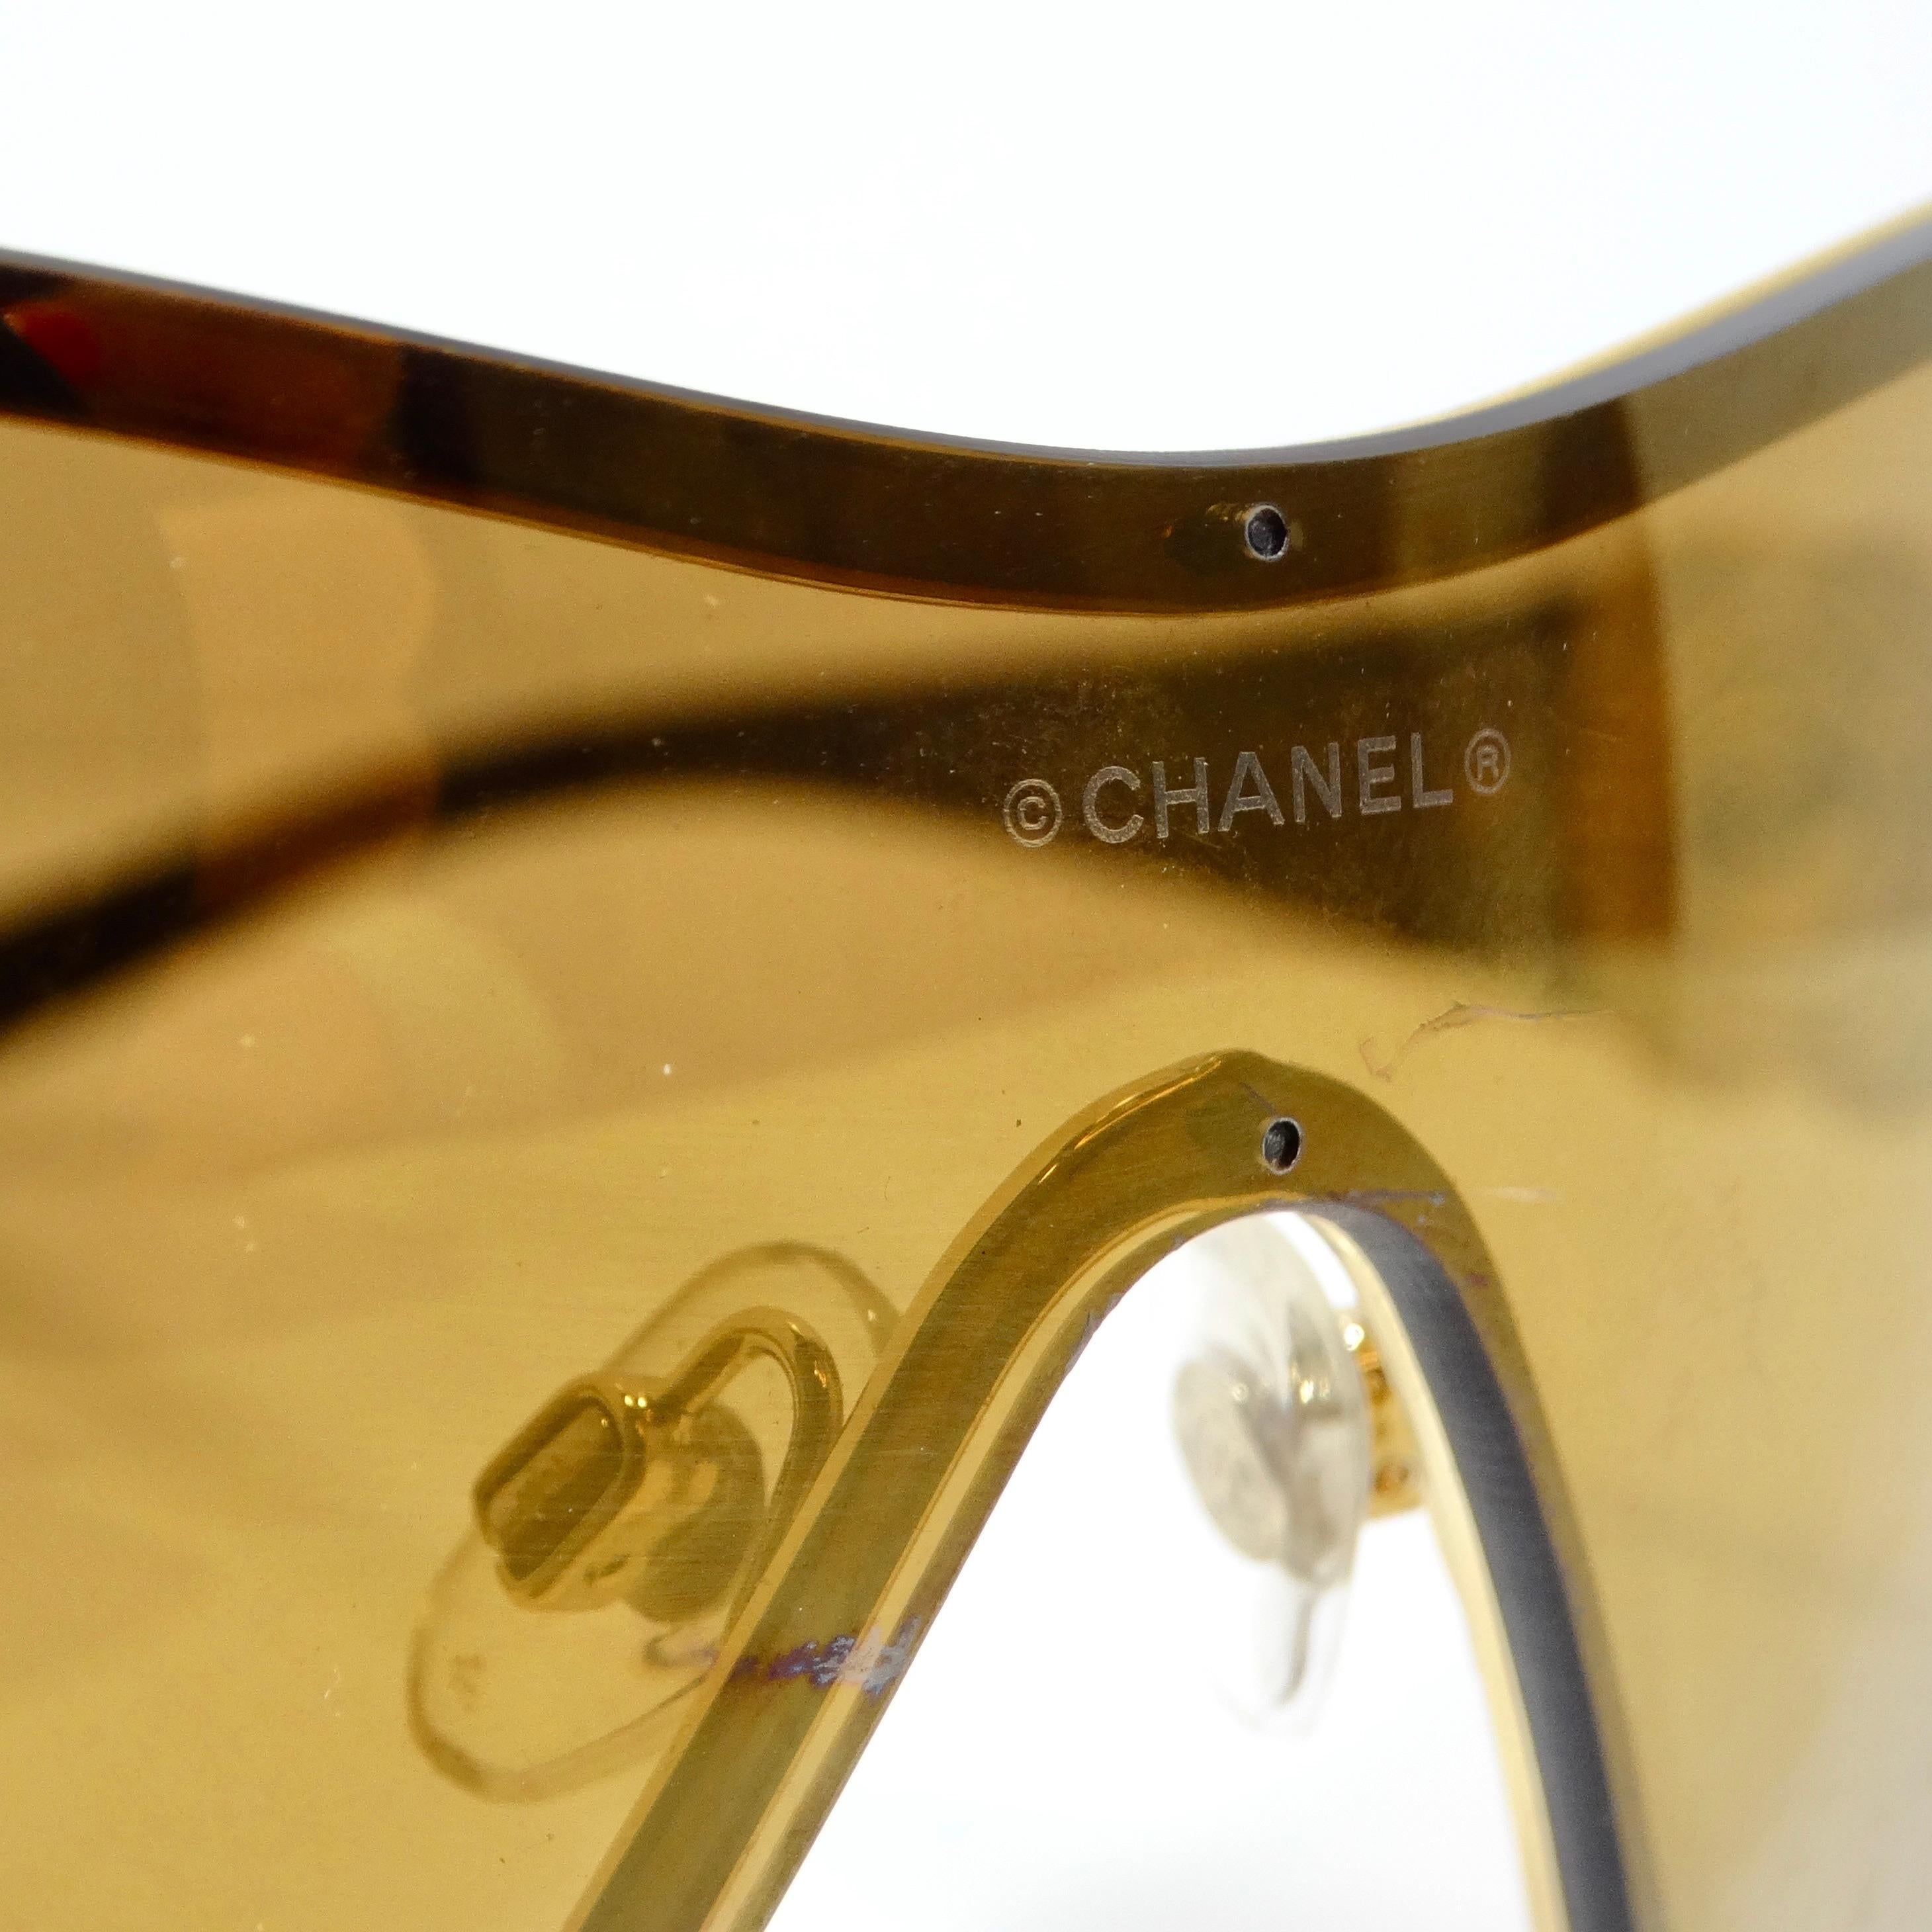 Voici les lunettes de soleil Chanel 1990 Camelia Shield Gold Tone, une fusion remarquable d'élégance intemporelle et de flair moderne. Fabriquées avec une attention méticuleuse aux détails, ces lunettes de soleil de style bouclier exsudent la